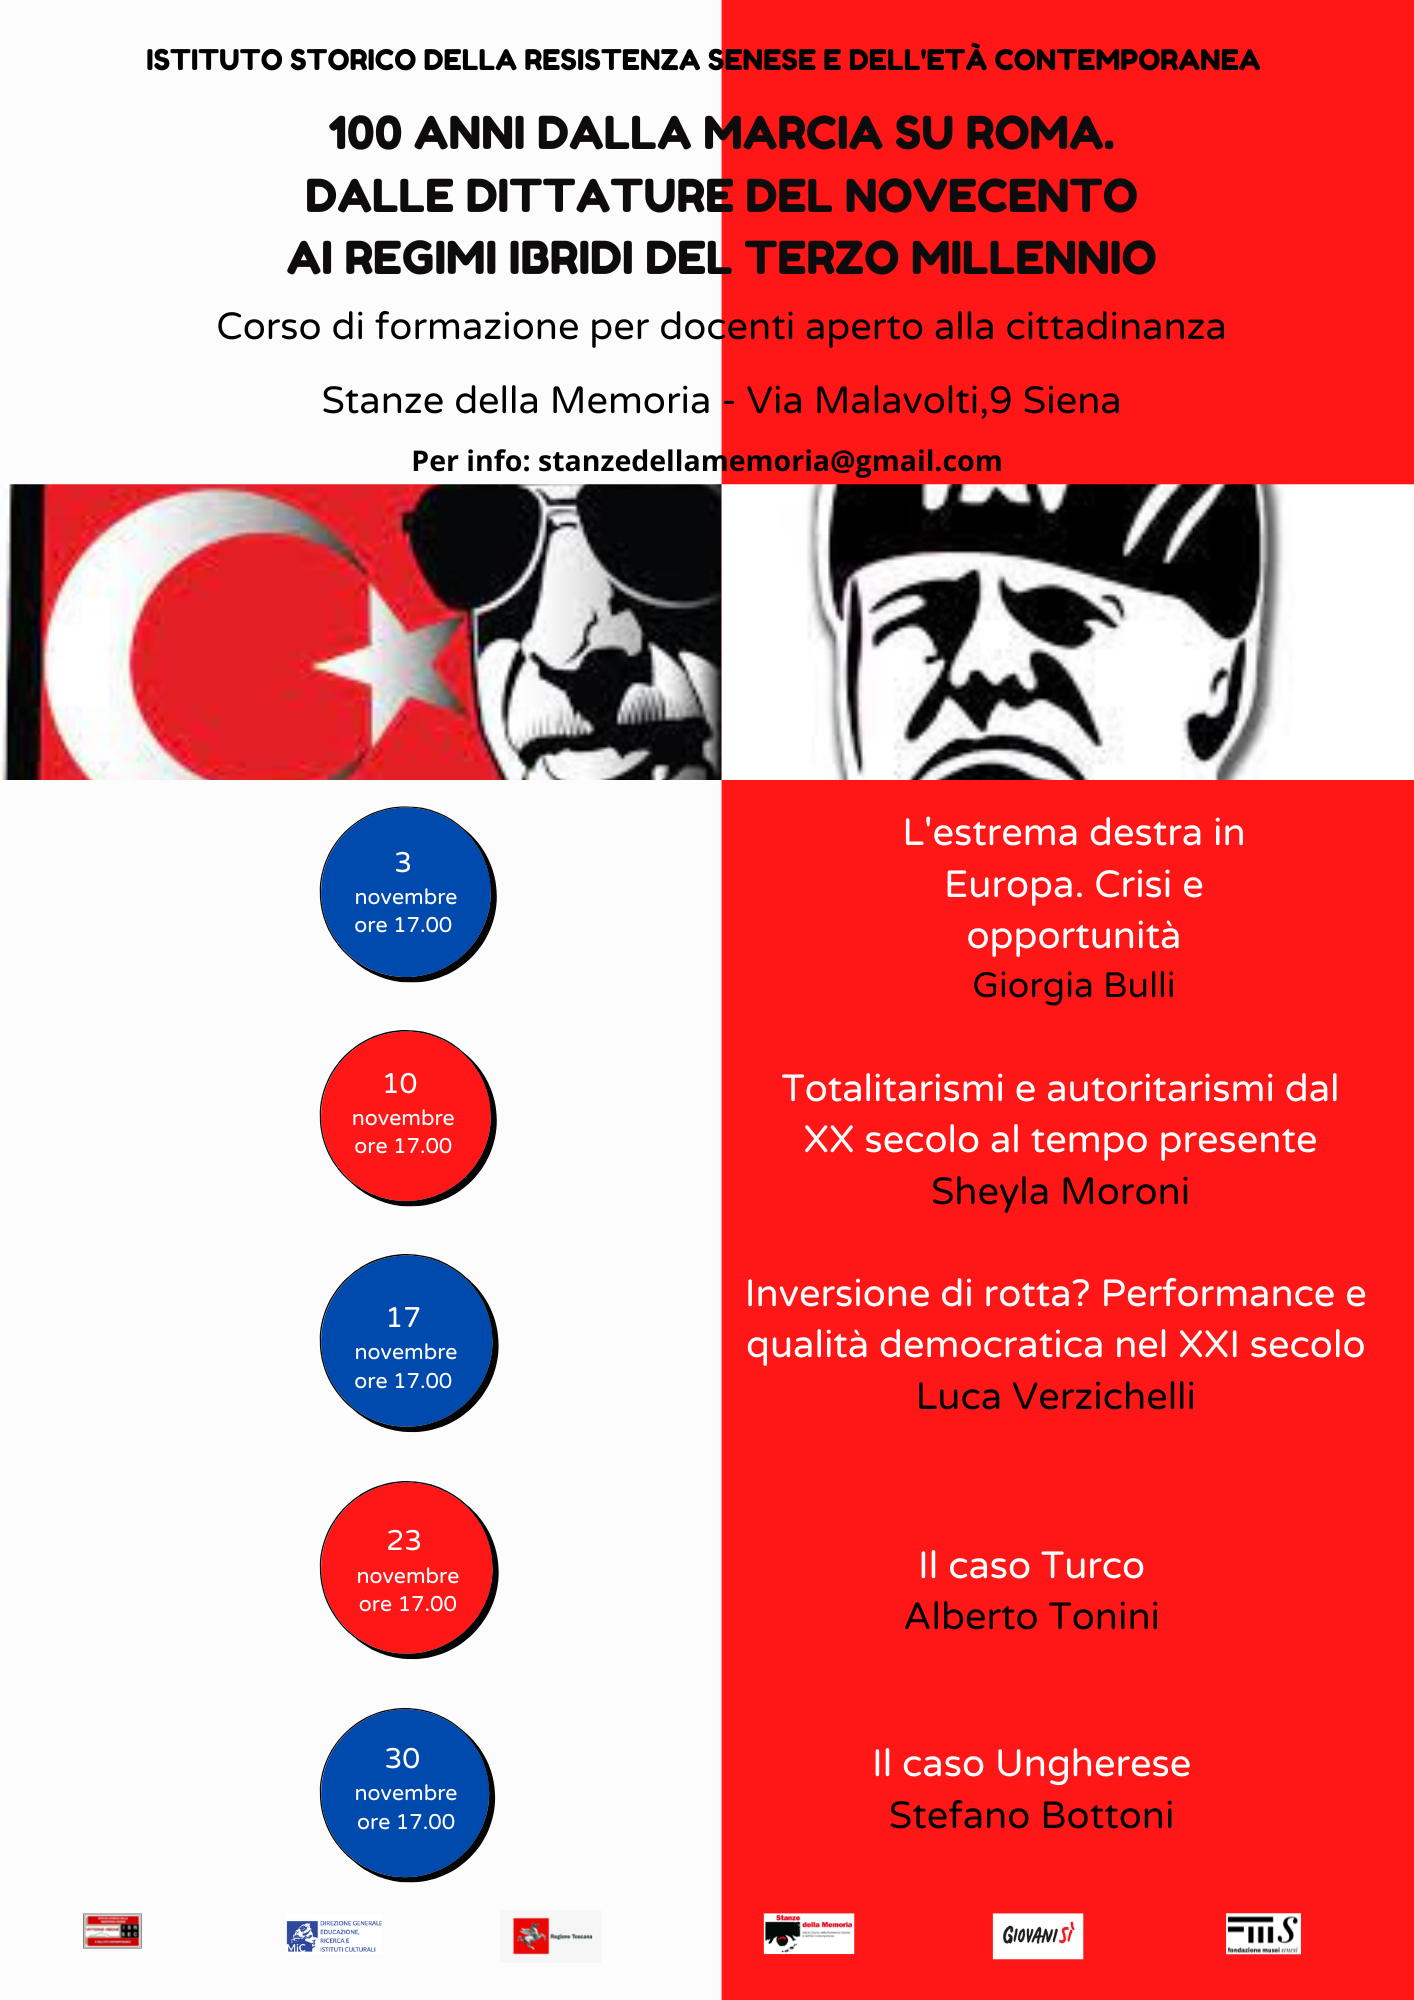 Il caso turco.png